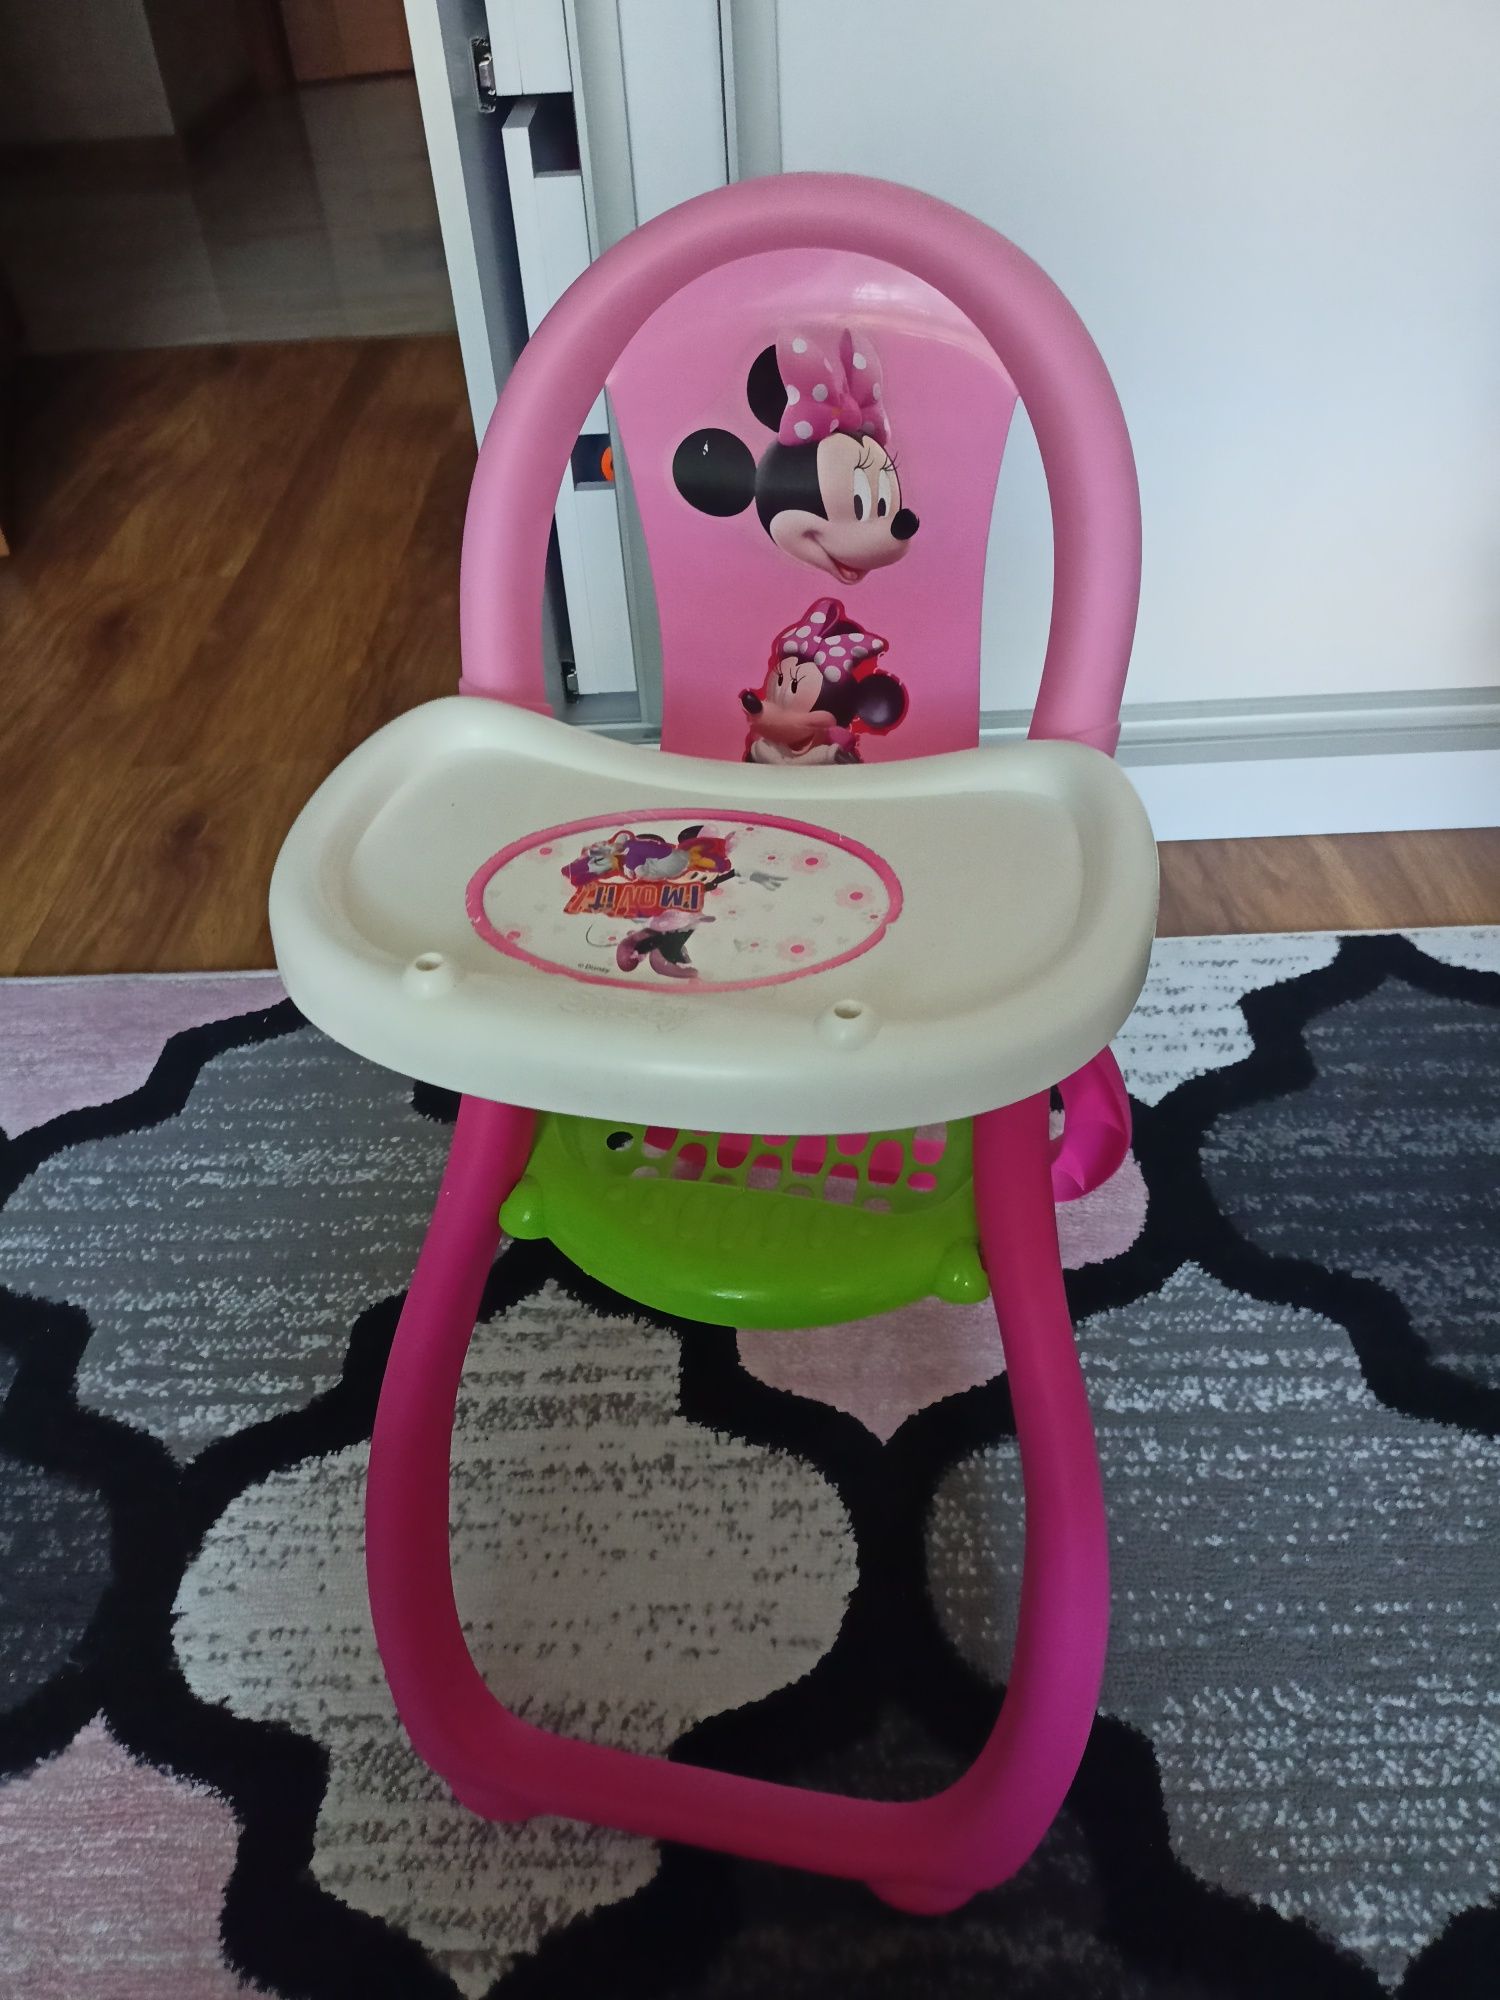 Krzesełko do karmienia lalek